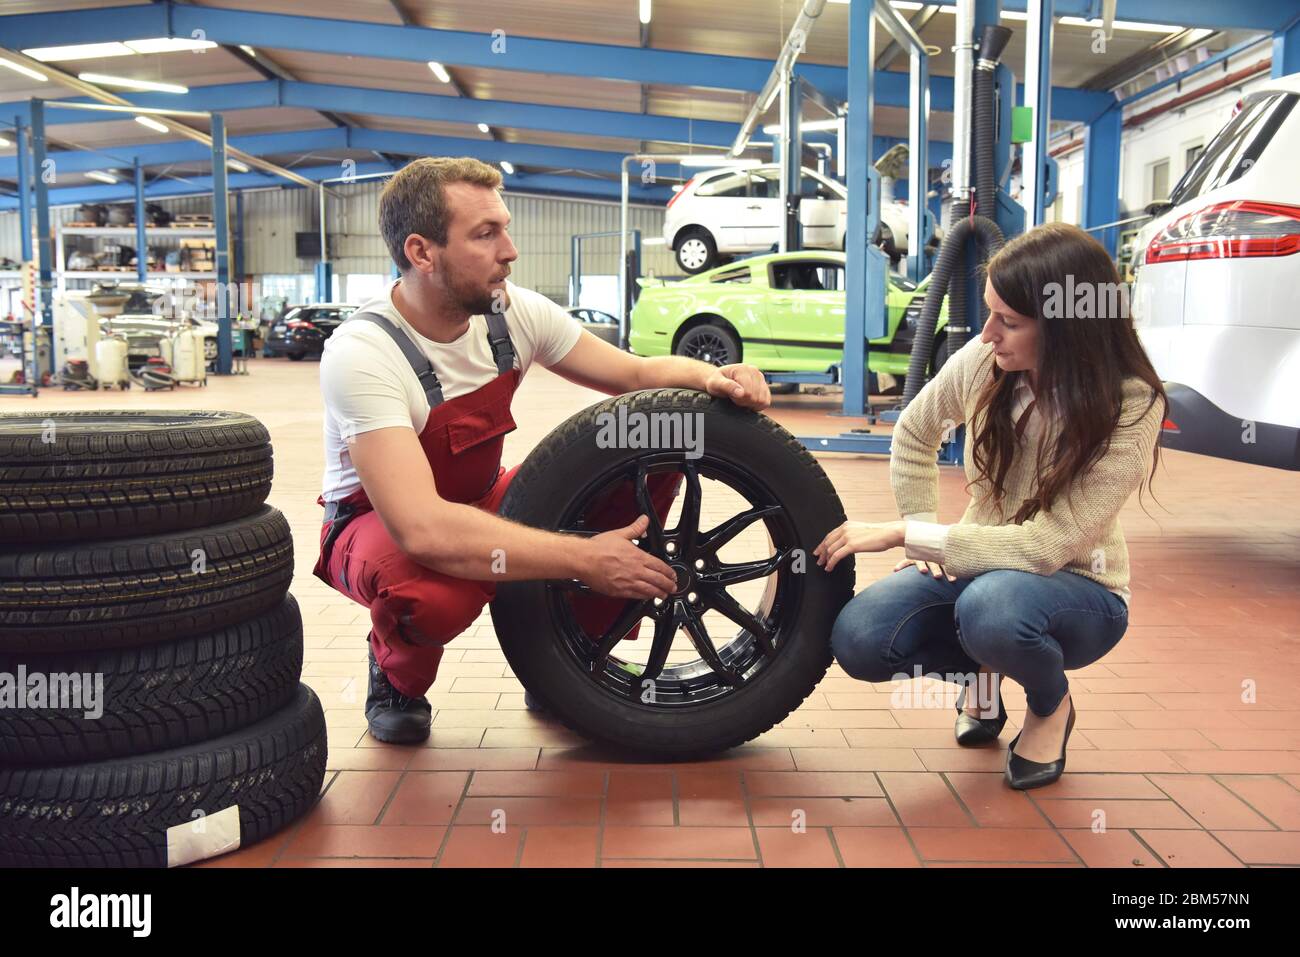 Mechaniker und Kunde sprechen in einer Garage miteinander - Reifen vom Auto wechseln Stockfoto